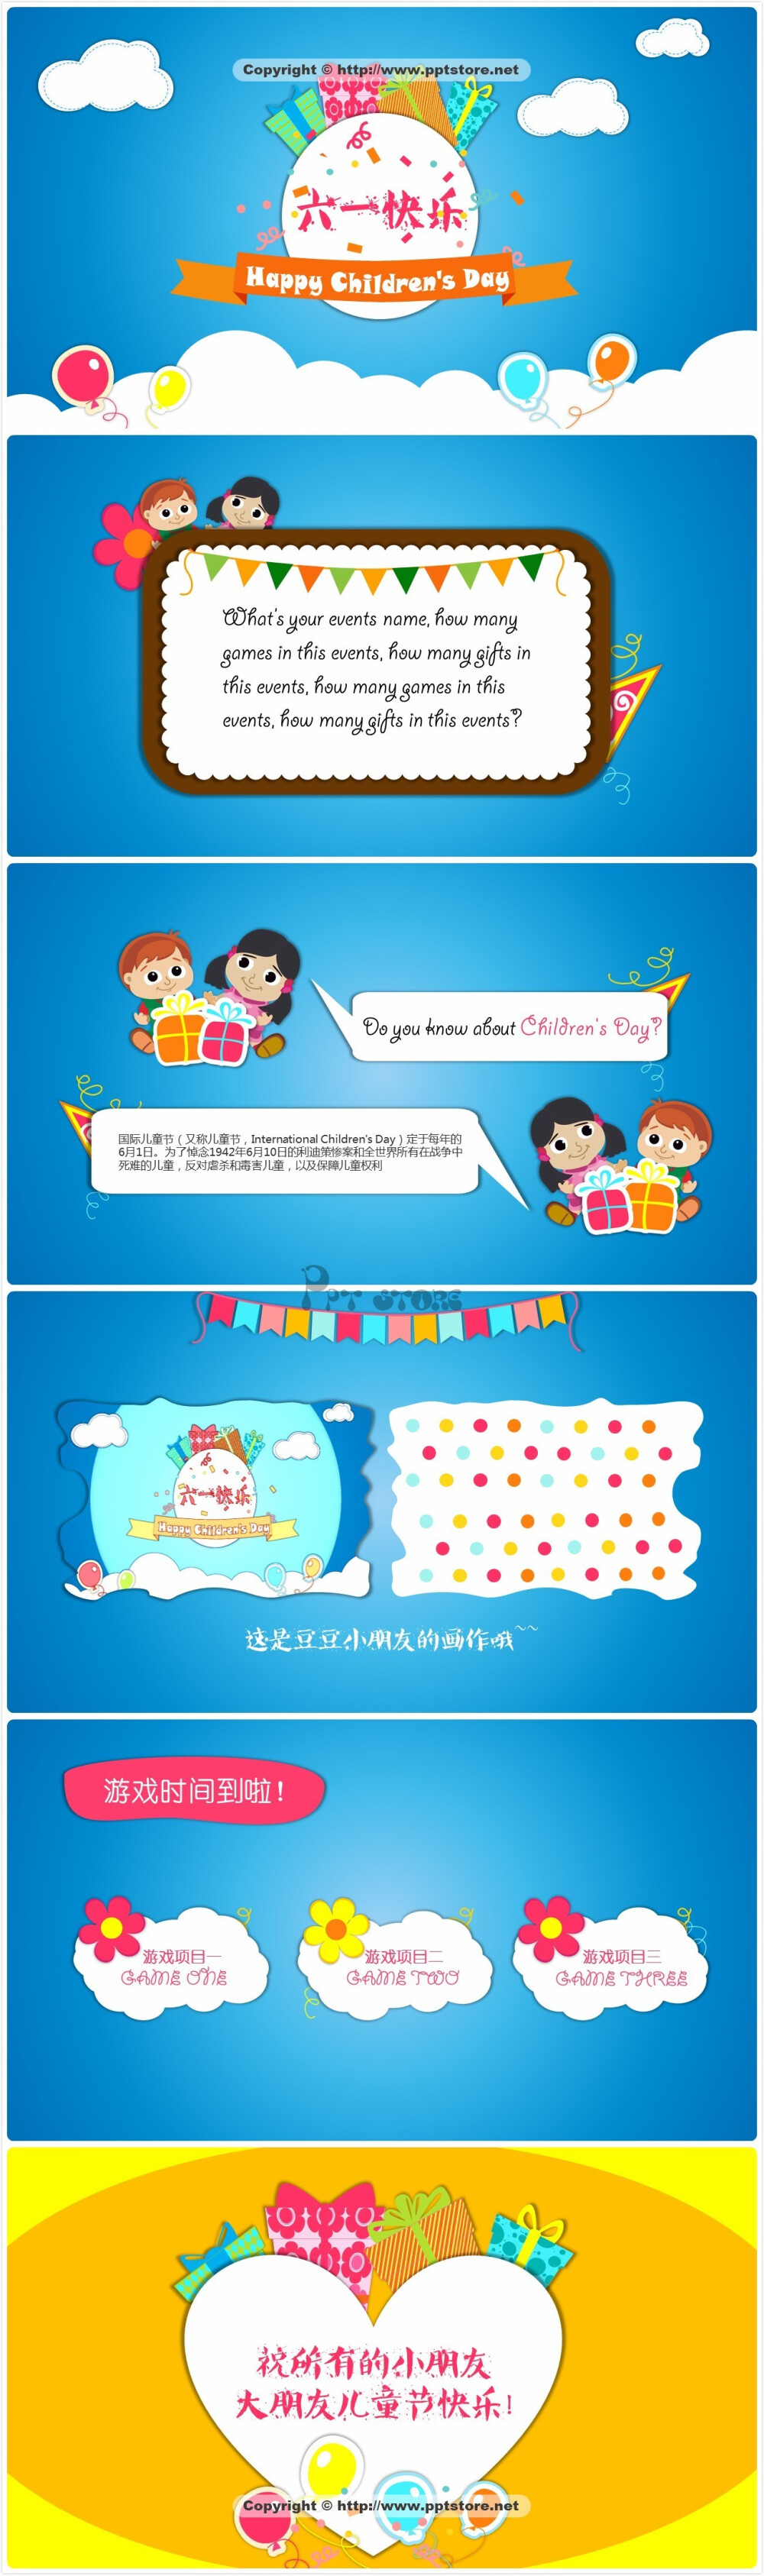 【儿童节快乐】卡通幼教活动模版PPT模板